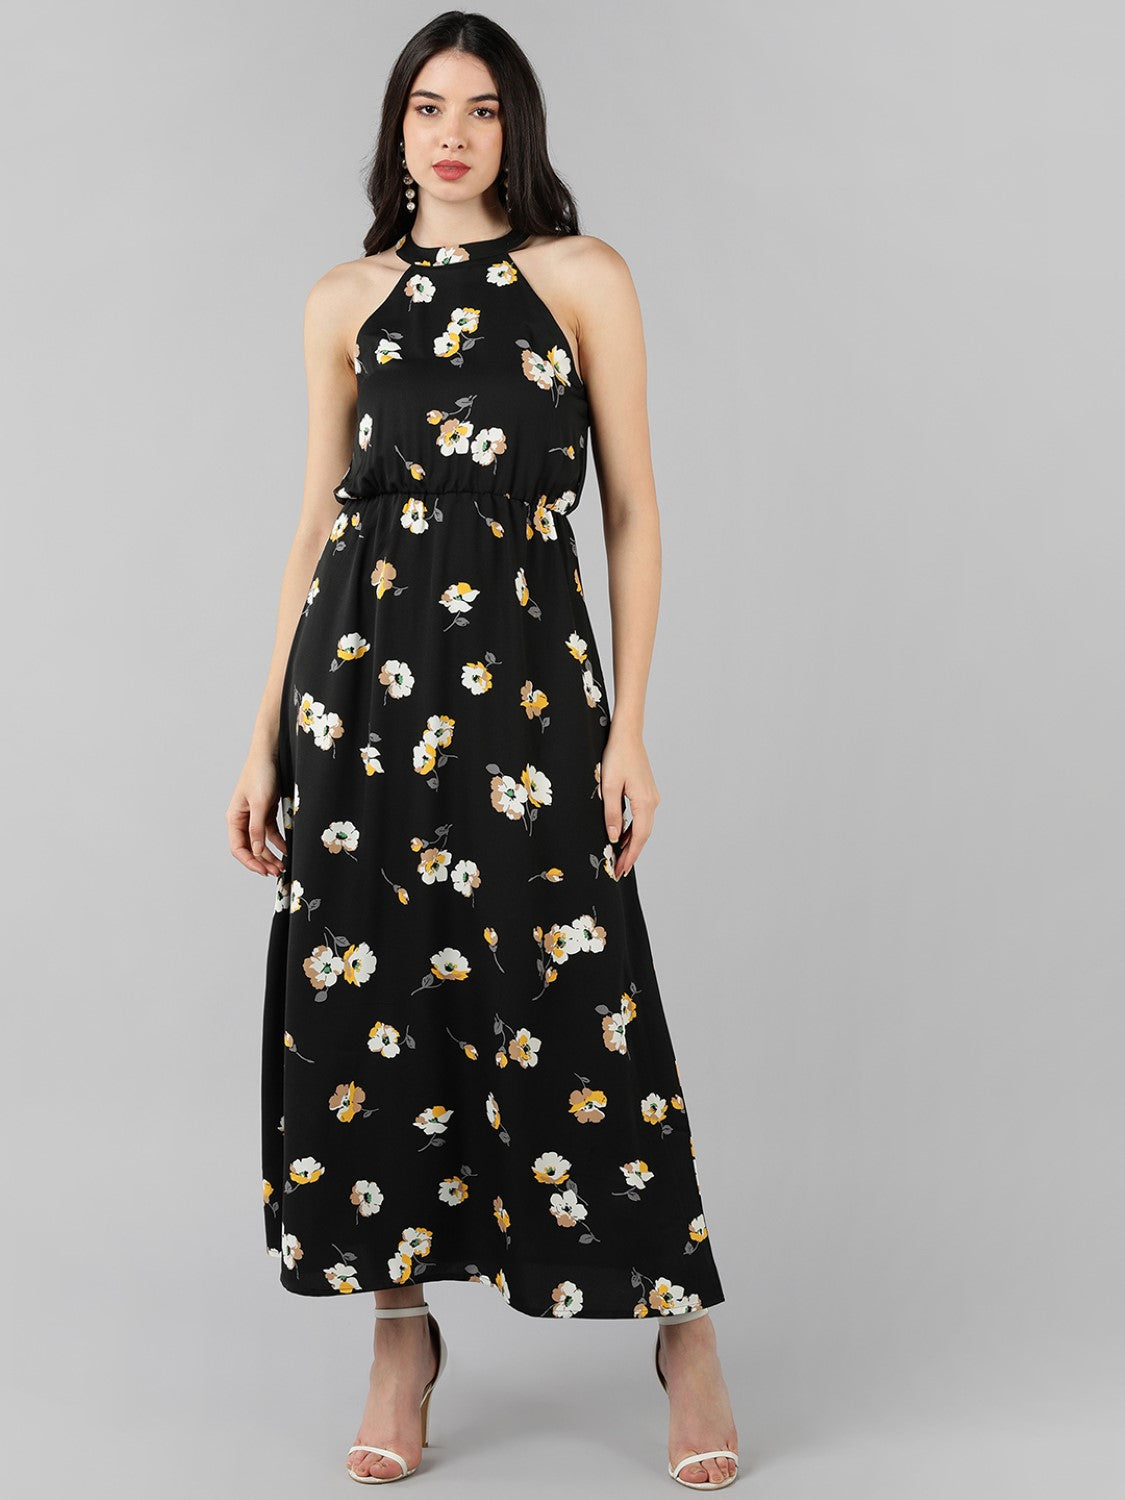 Women's Black Georgette Floral Printed Dress  - Ahika